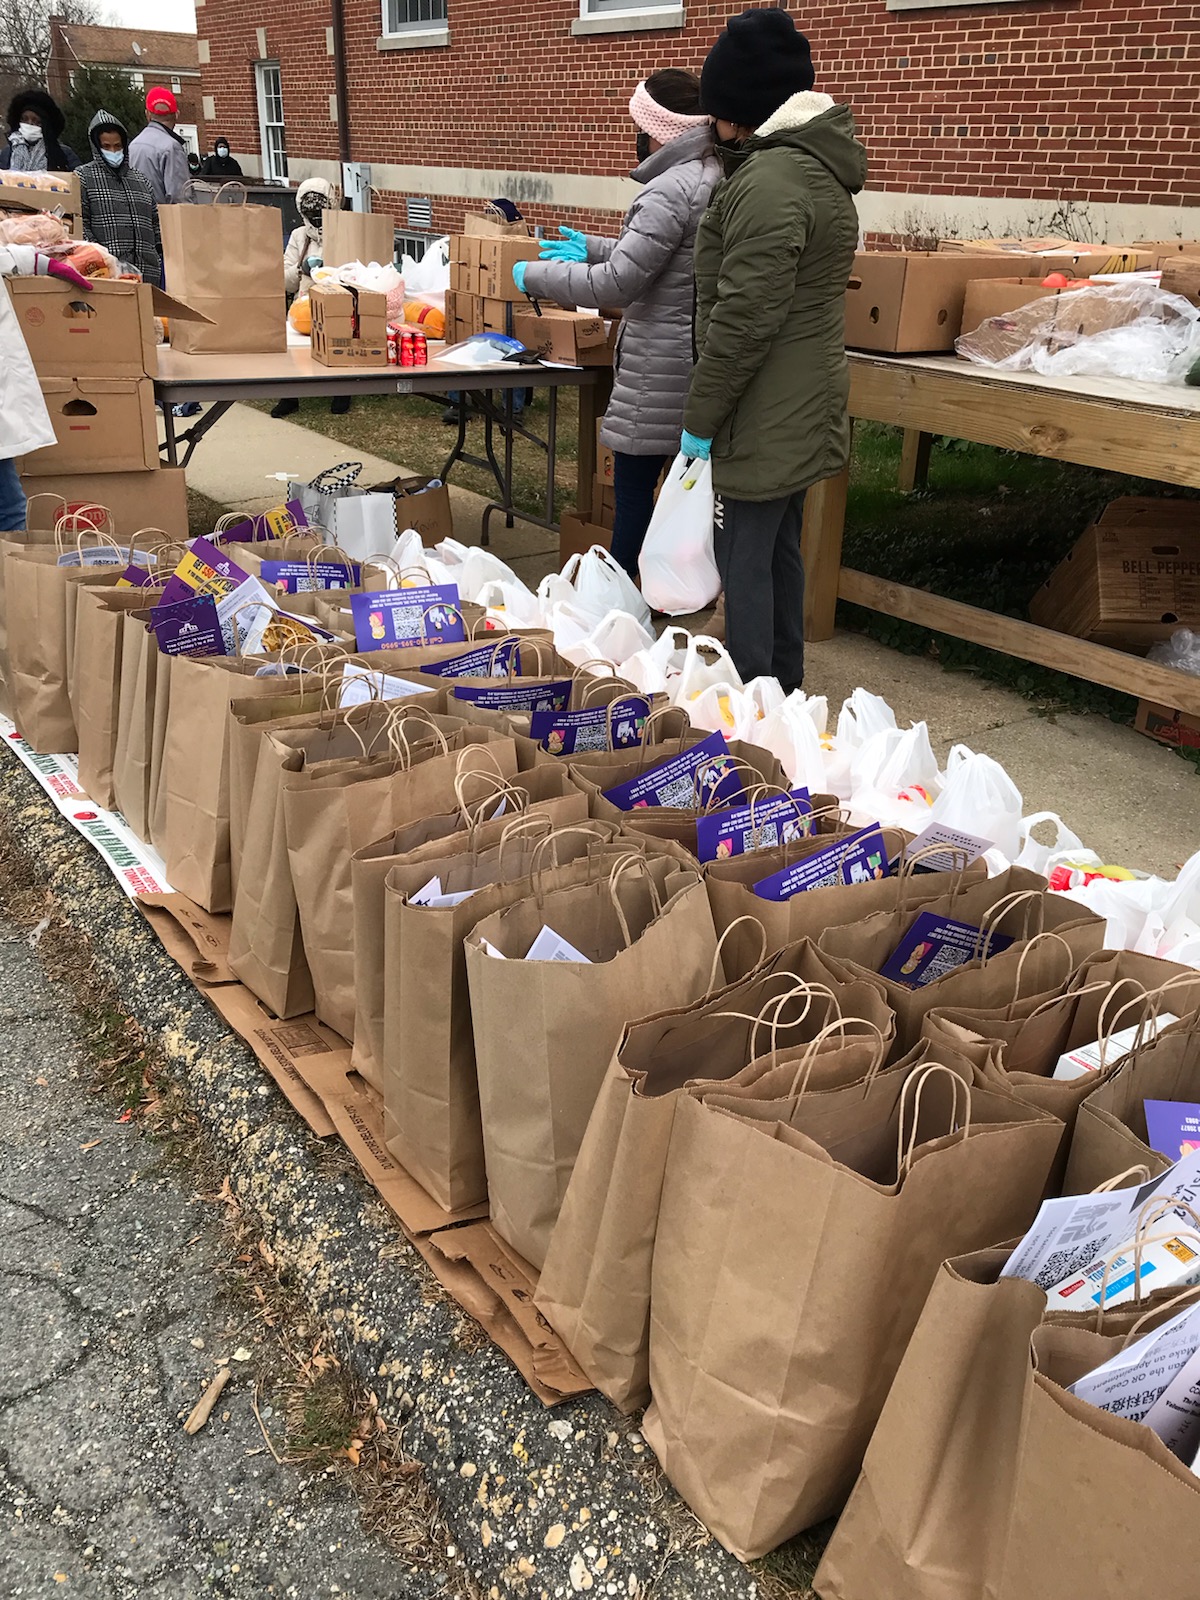 Bags of groceries on a sidewalk